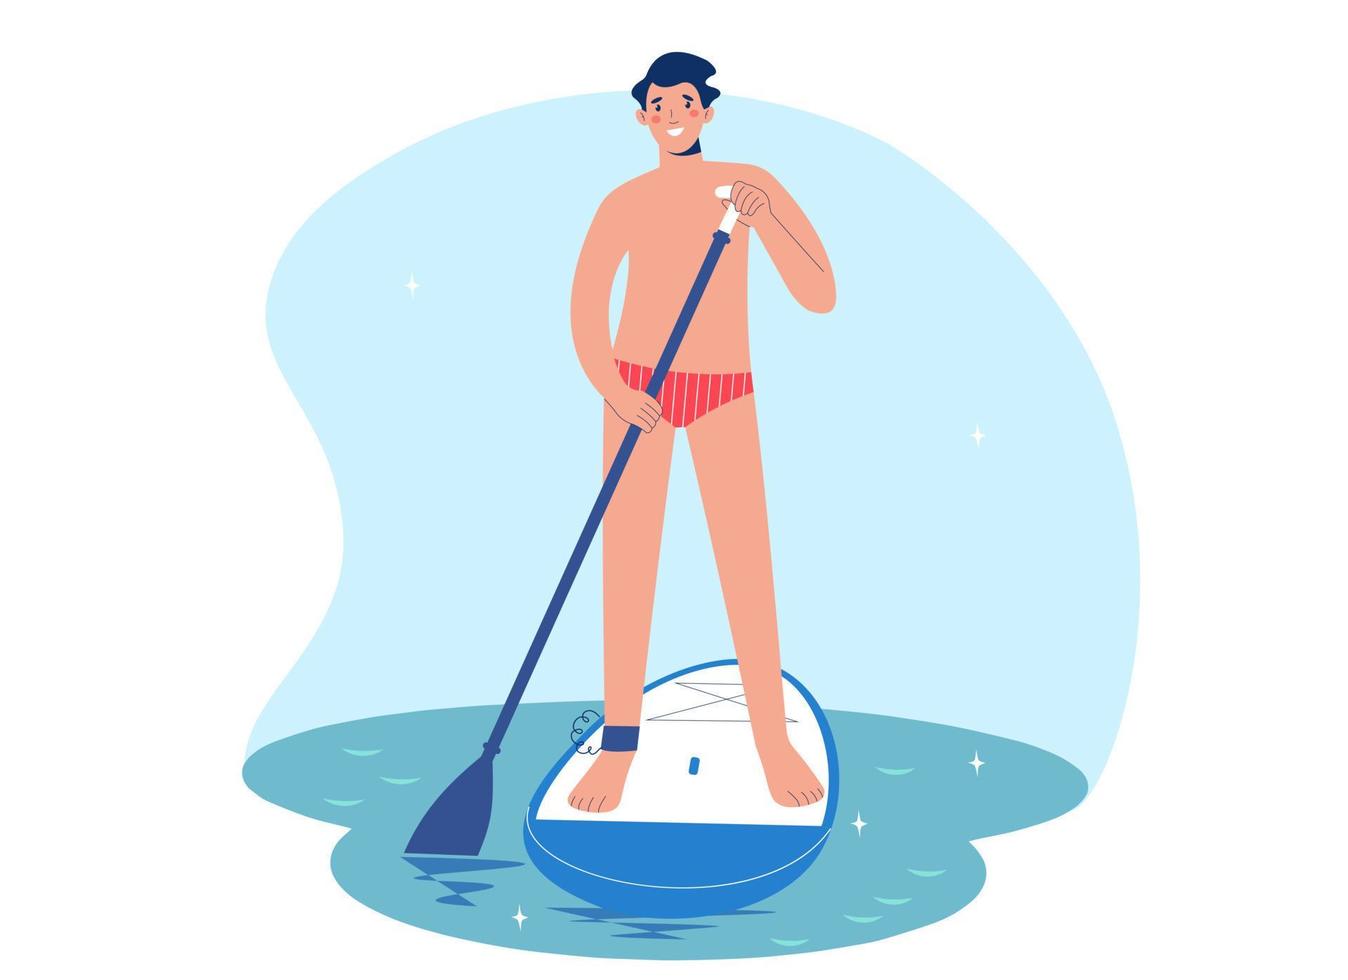 el hombre de pie está remando con una tabla de remo en el agua. hombre en agua a bordo de sup. concepto de surf sup vector